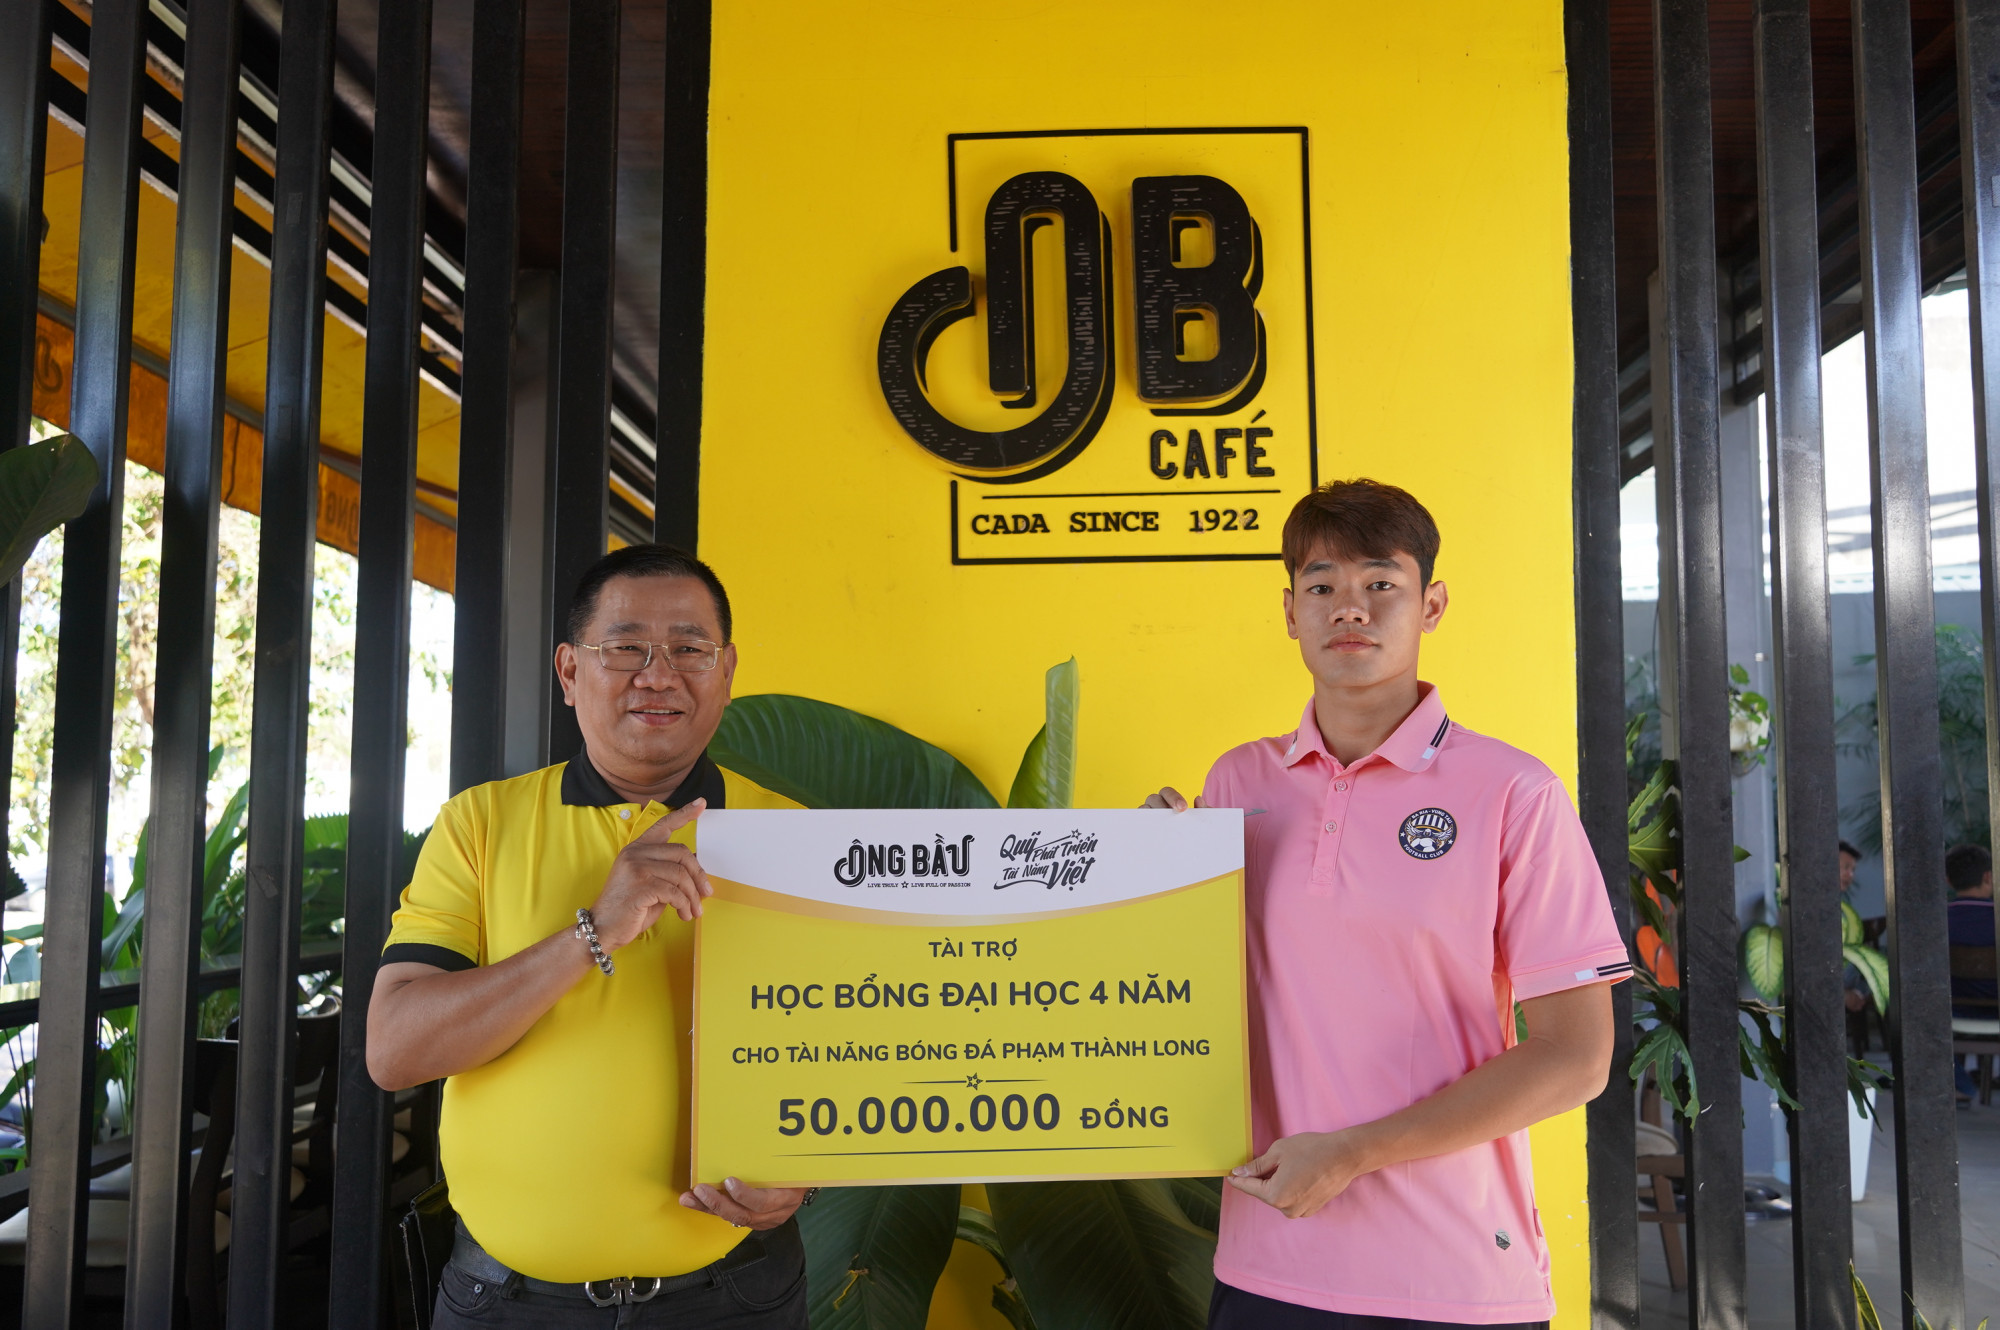 Tài năng bóng đá Phạm Thành Long nhận bảng tượng trưng học bổng từ đại diện Quỹ Phát triển Tài năng Việt của Ông Bầu - Ảnh: Ông Bầu